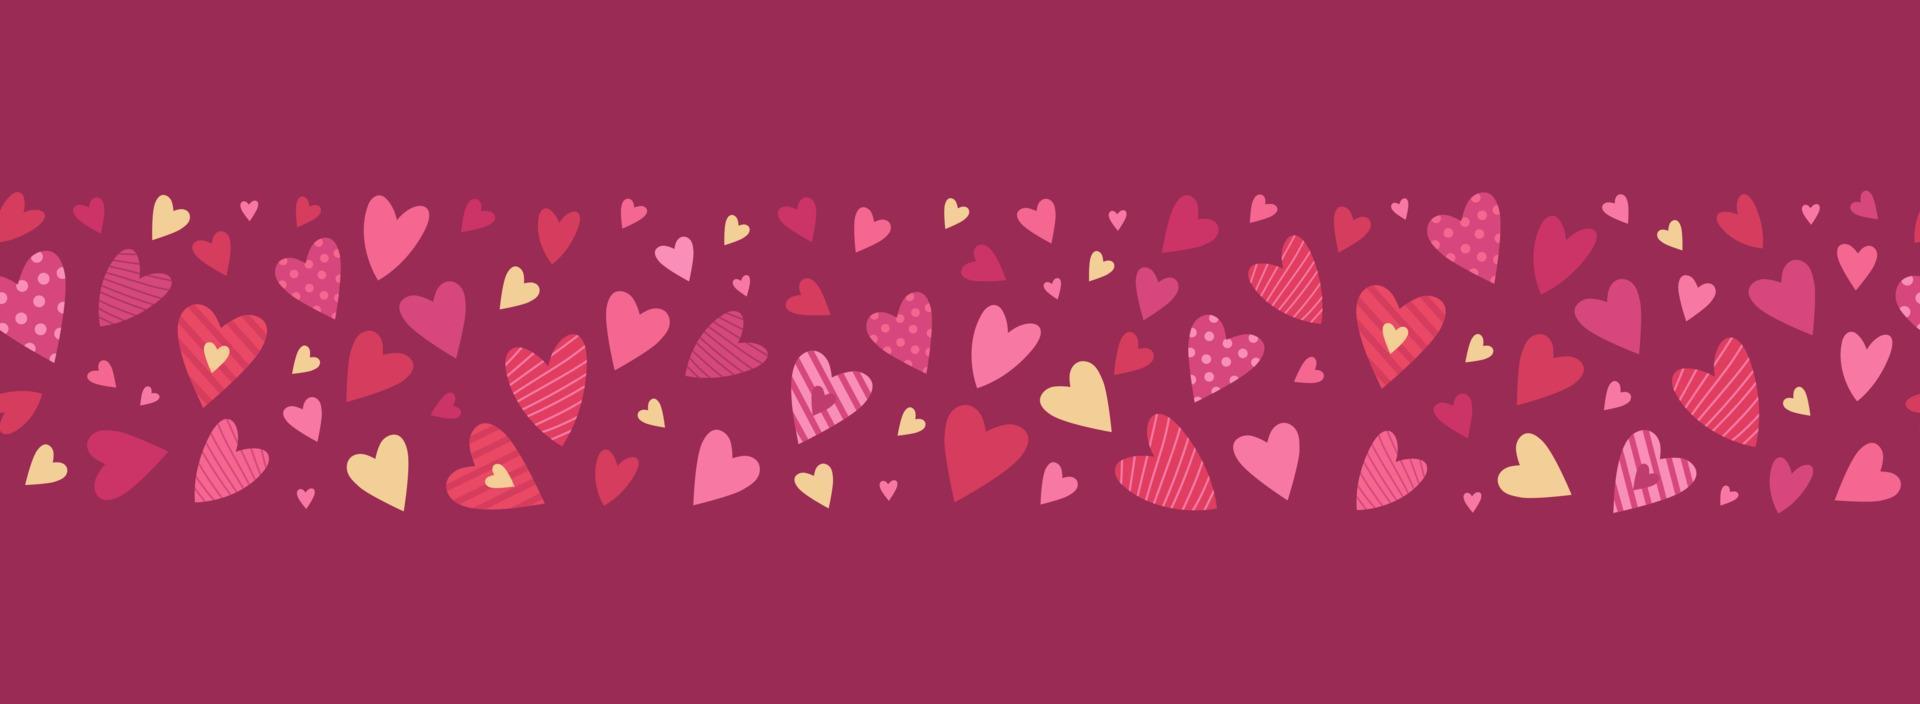 schattig rood, roze en goud harten naadloos patroon. lief romantisch grens voor Valentijnsdag dag, moeder dag, bruiloft. geschikt voor omhulsel papier, ansichtkaarten, uitnodigingen. vector